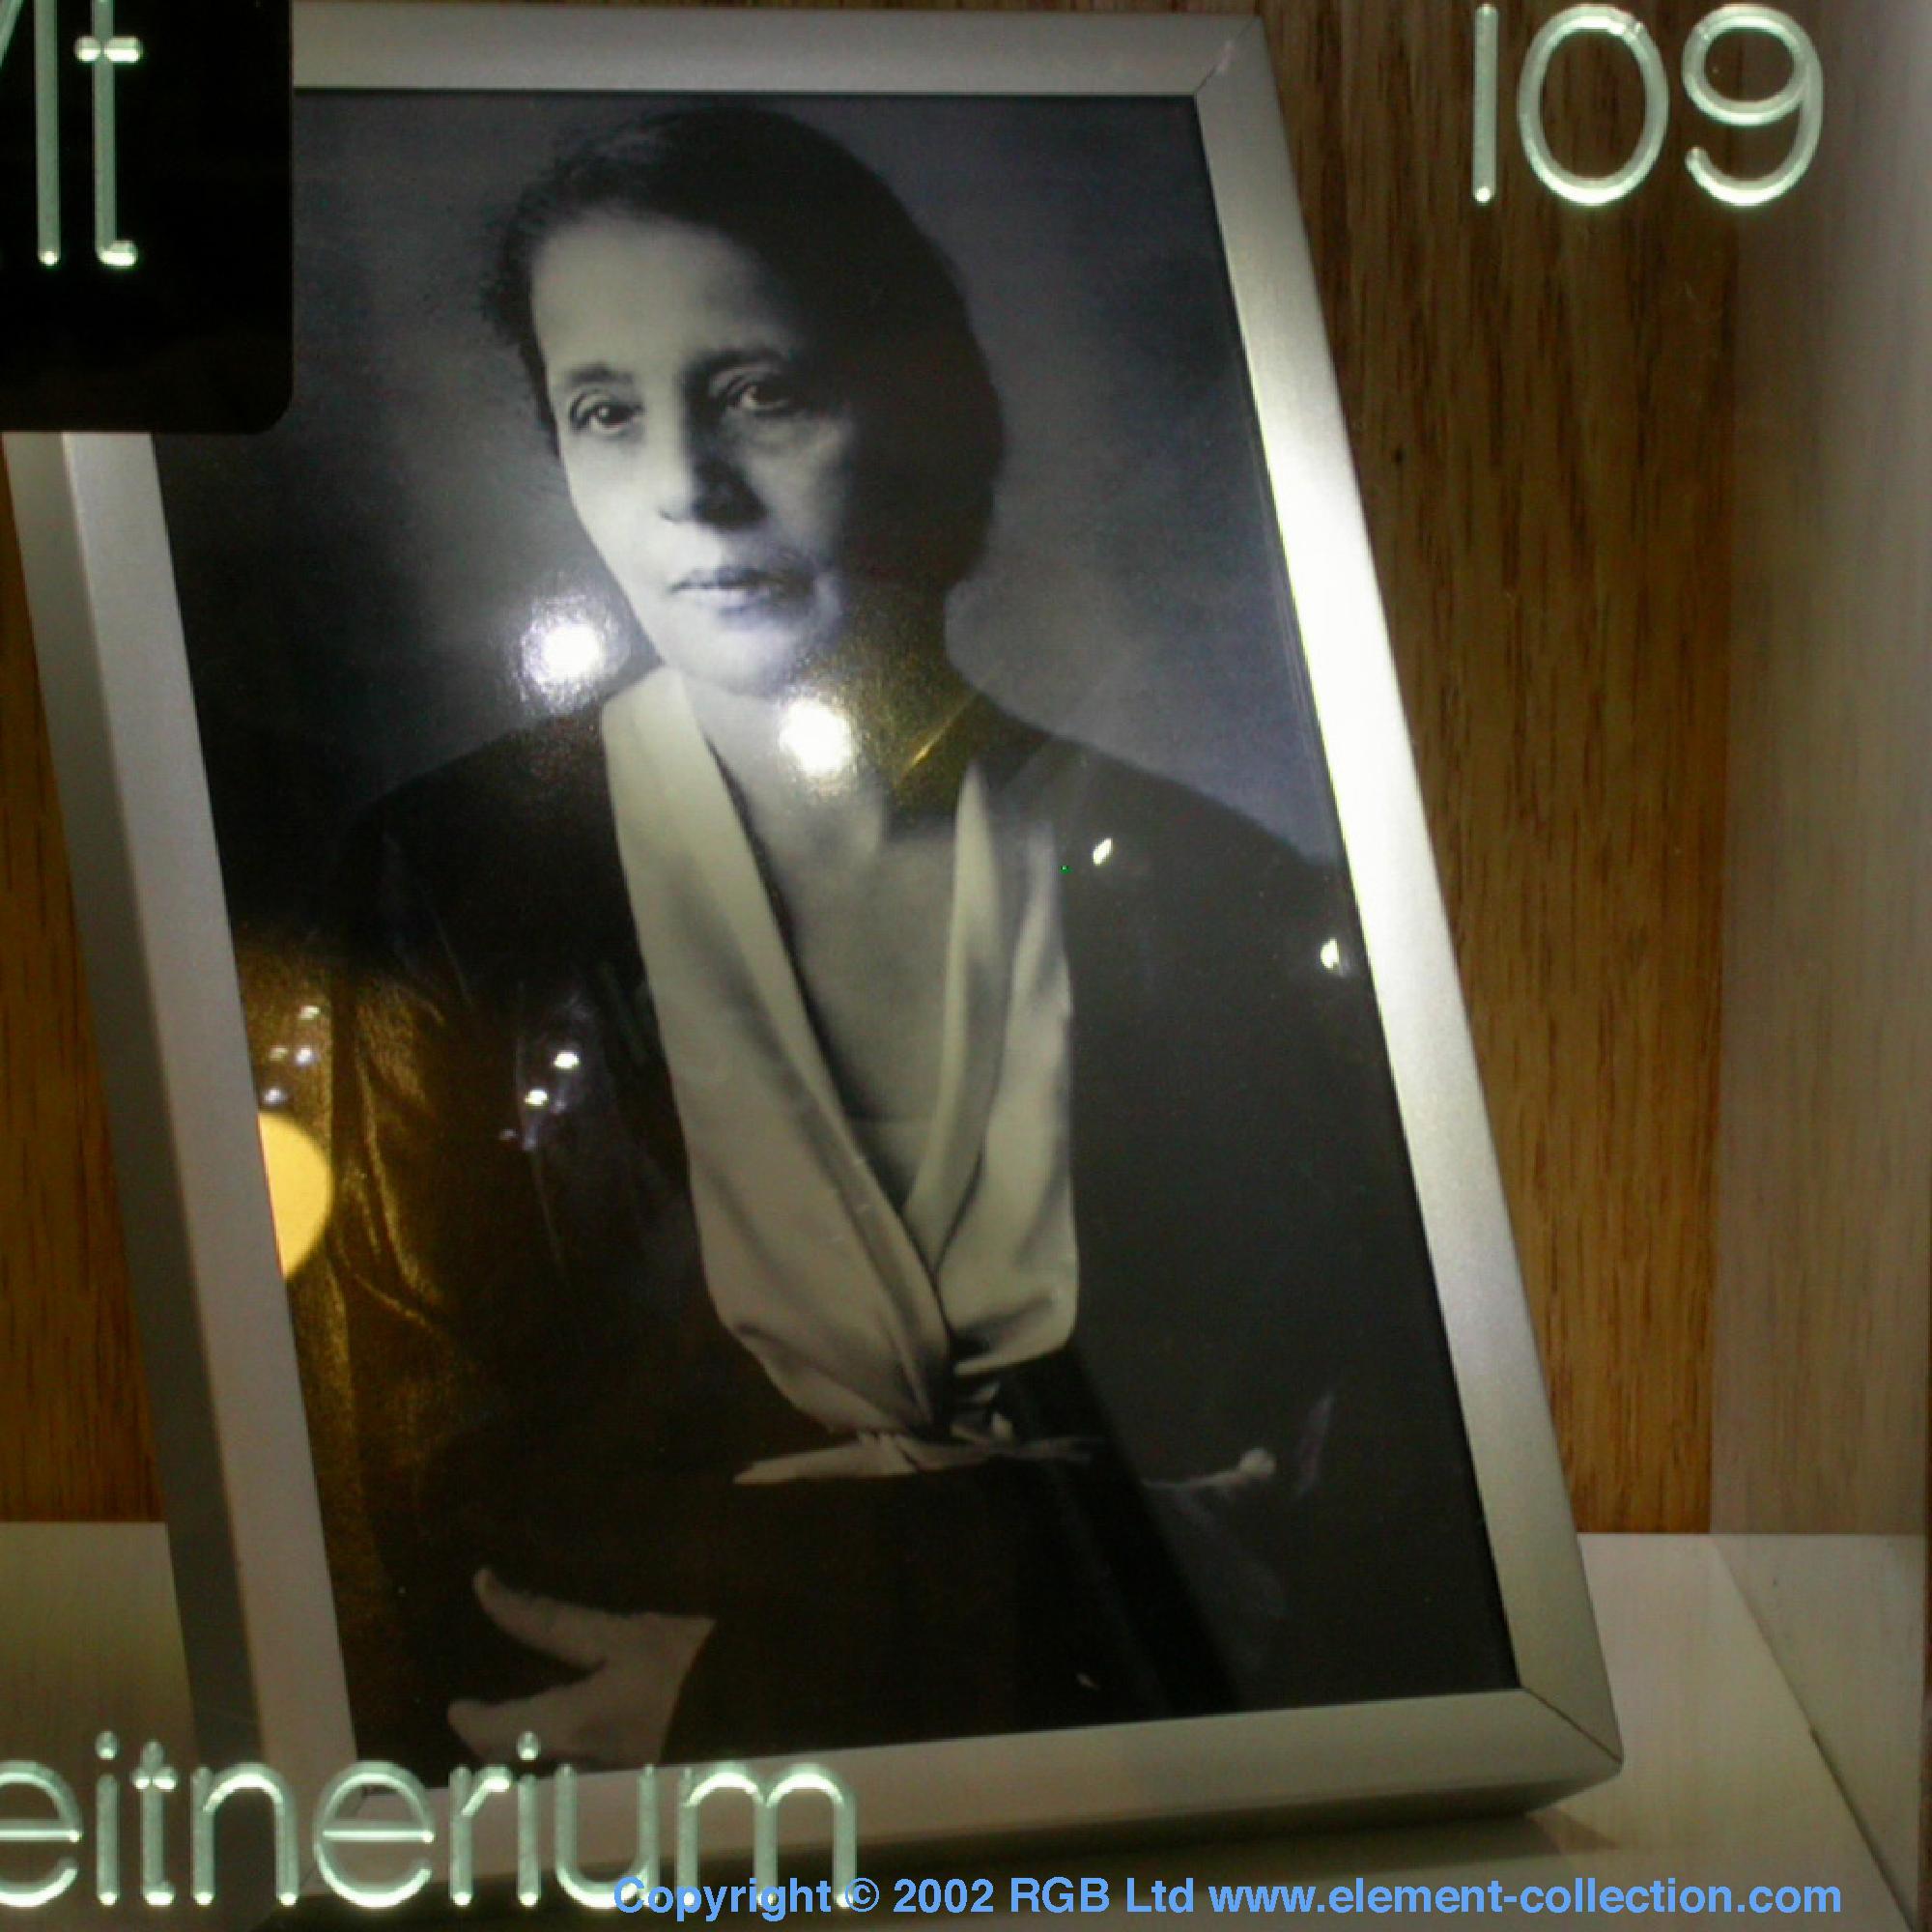  Photograph of Lise Meitner